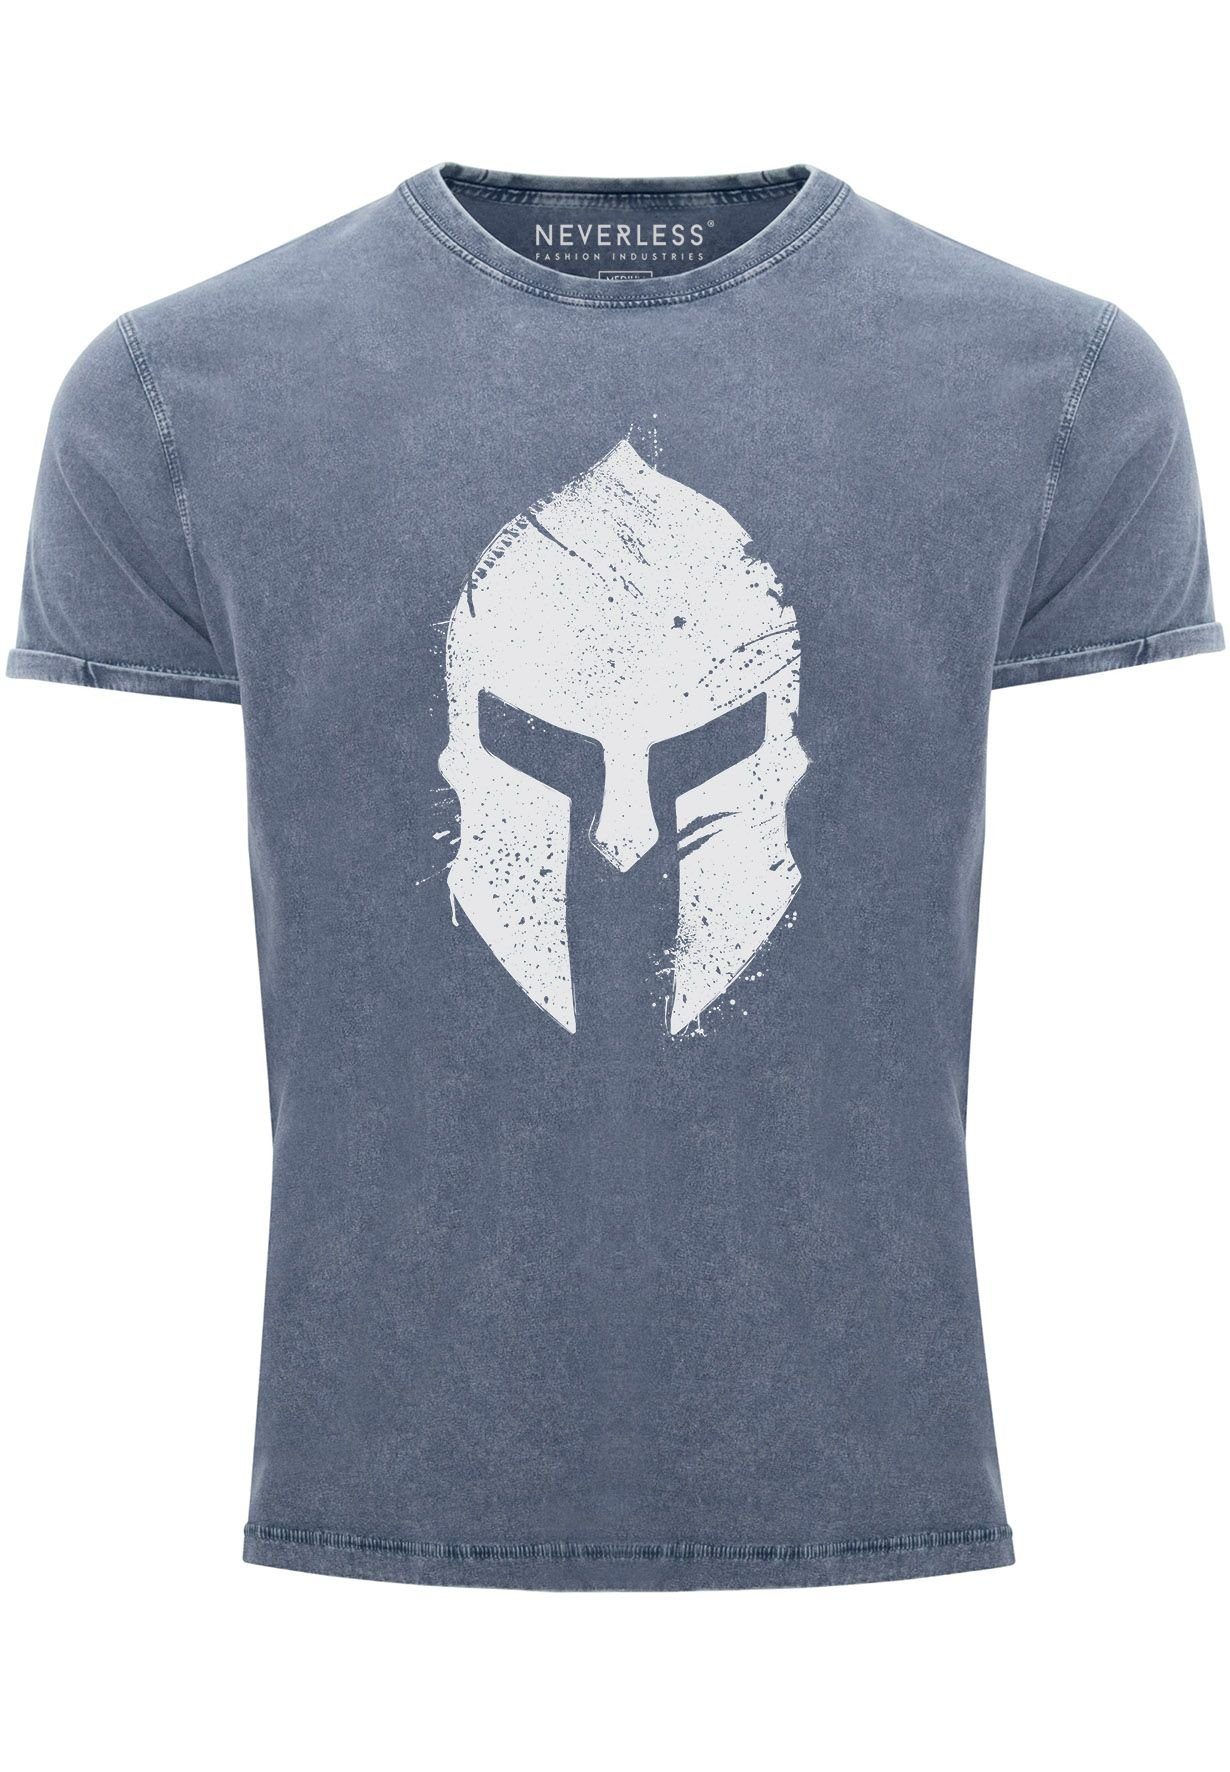 Neverless Print-Shirt Herren Vintage Shirt Print Sparta-Helm Aufdruck Gladiator Krieger Warr mit Print blau